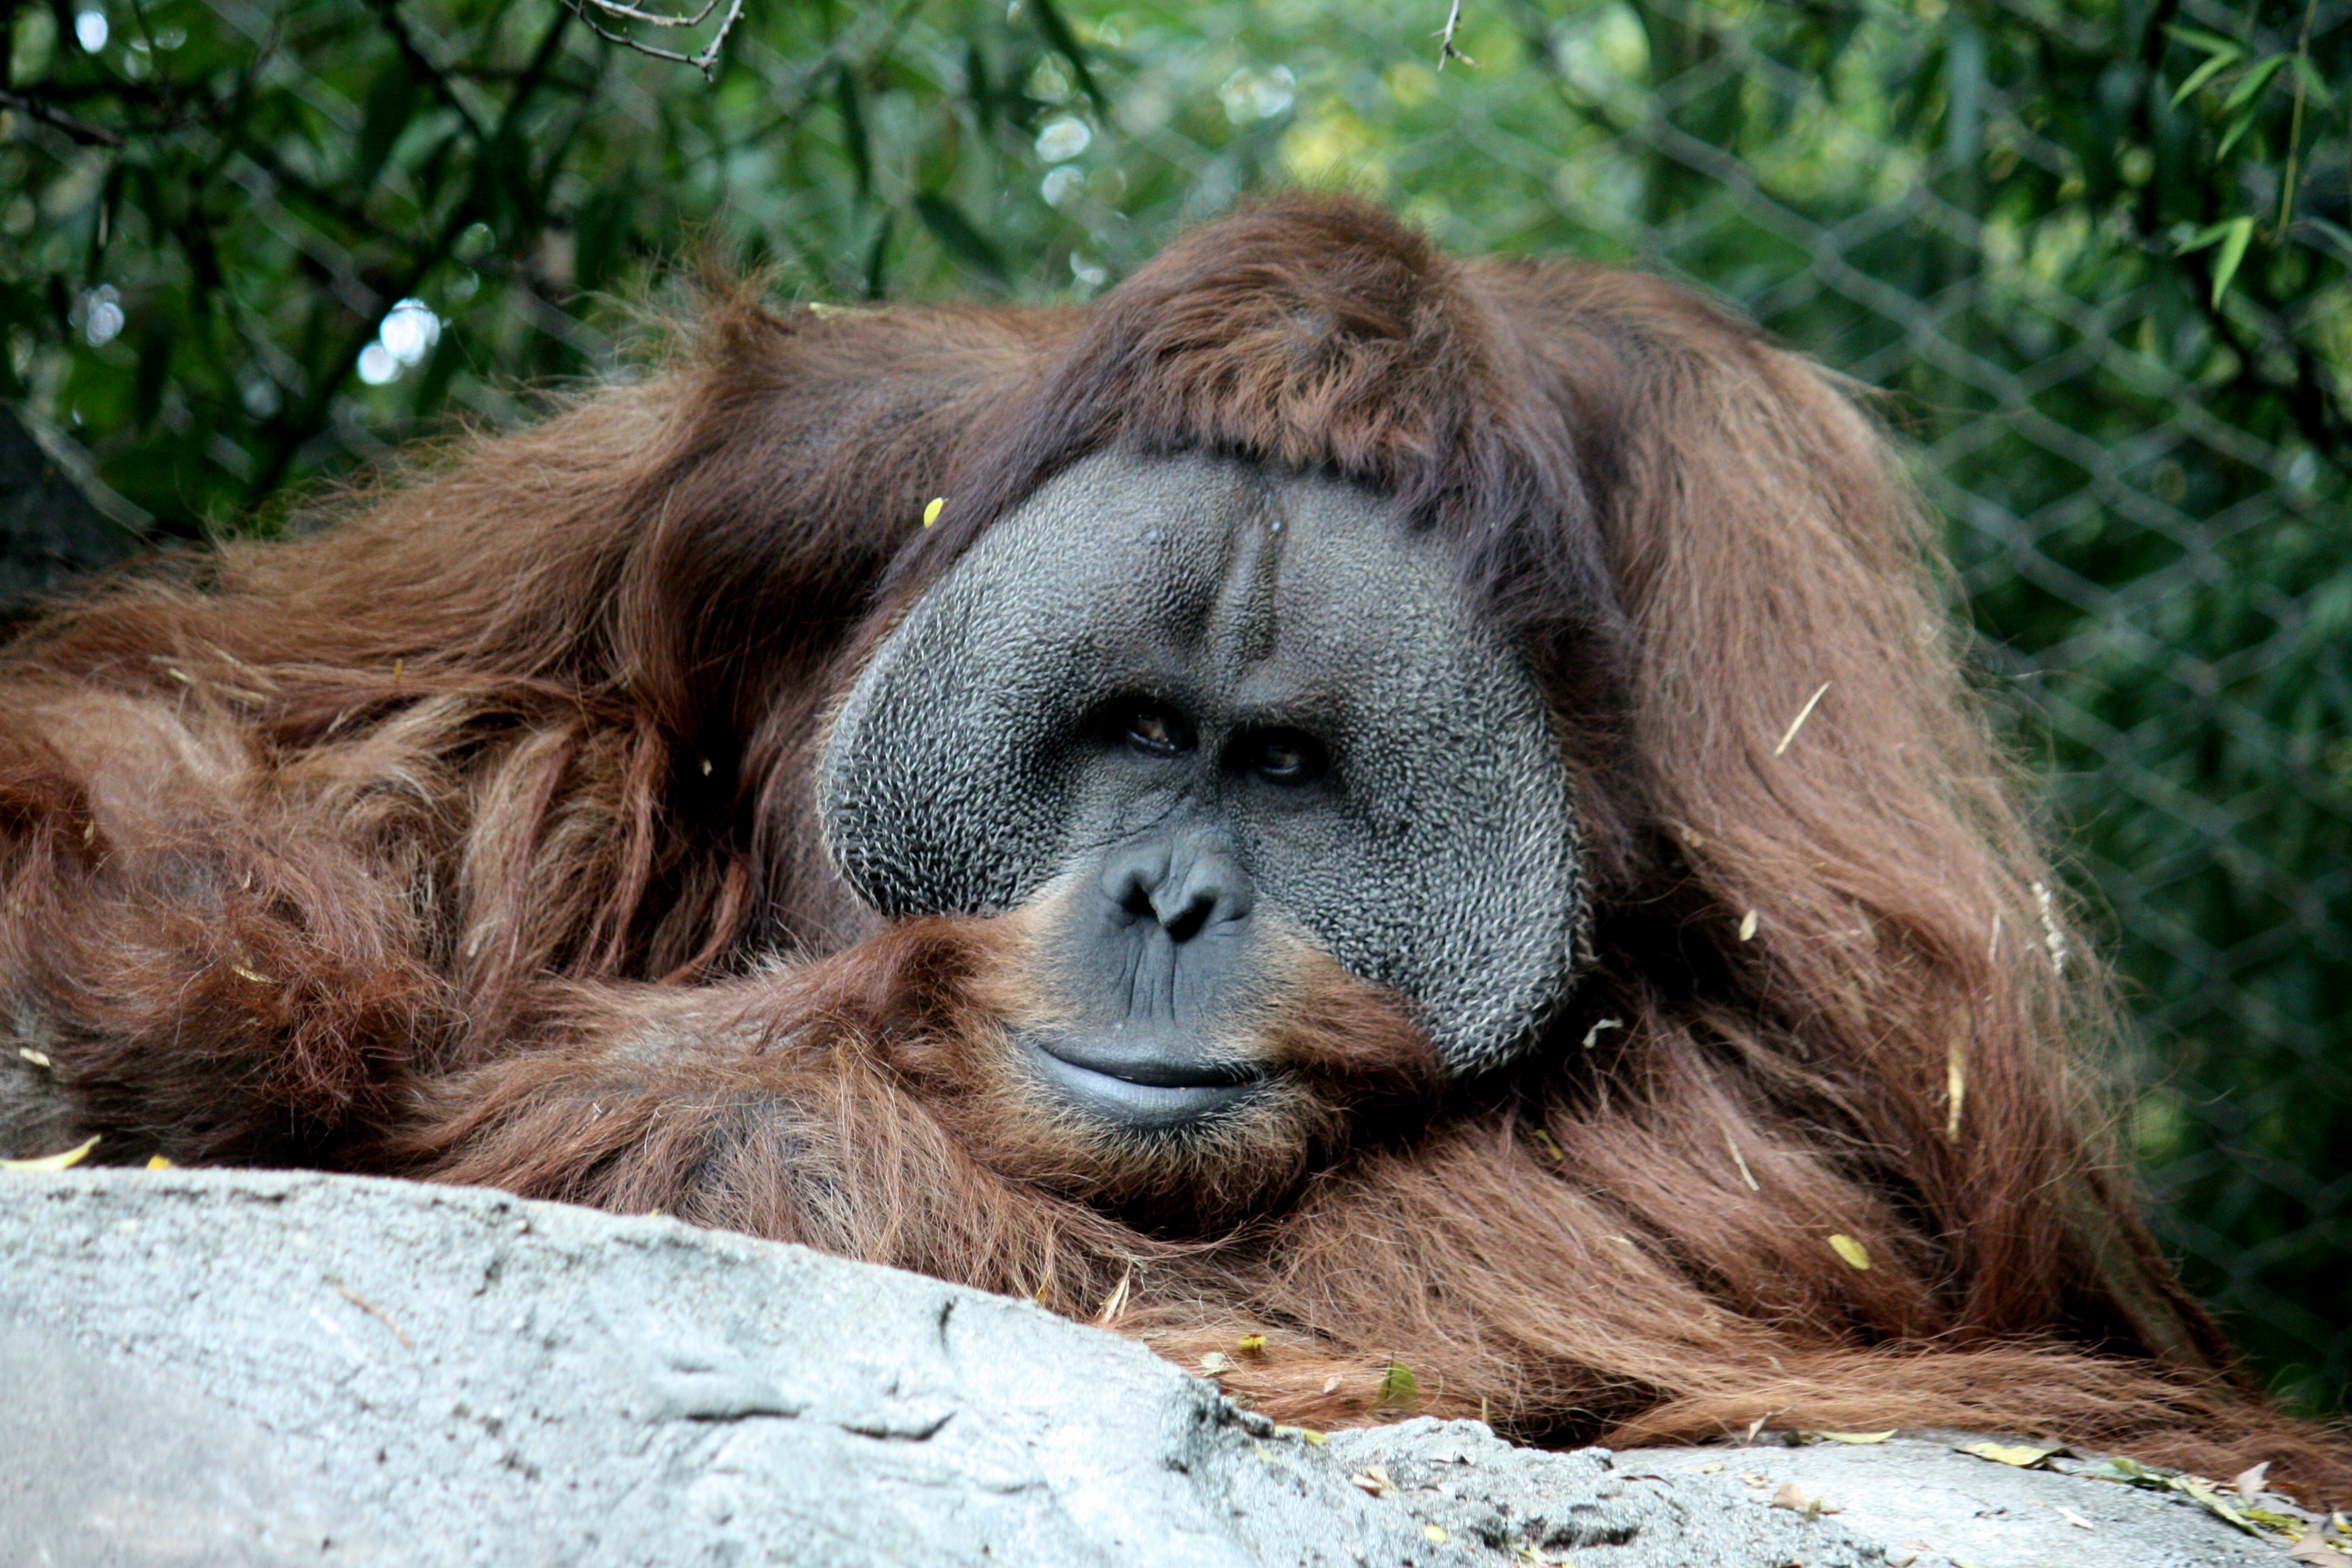 How many orangutan are left?